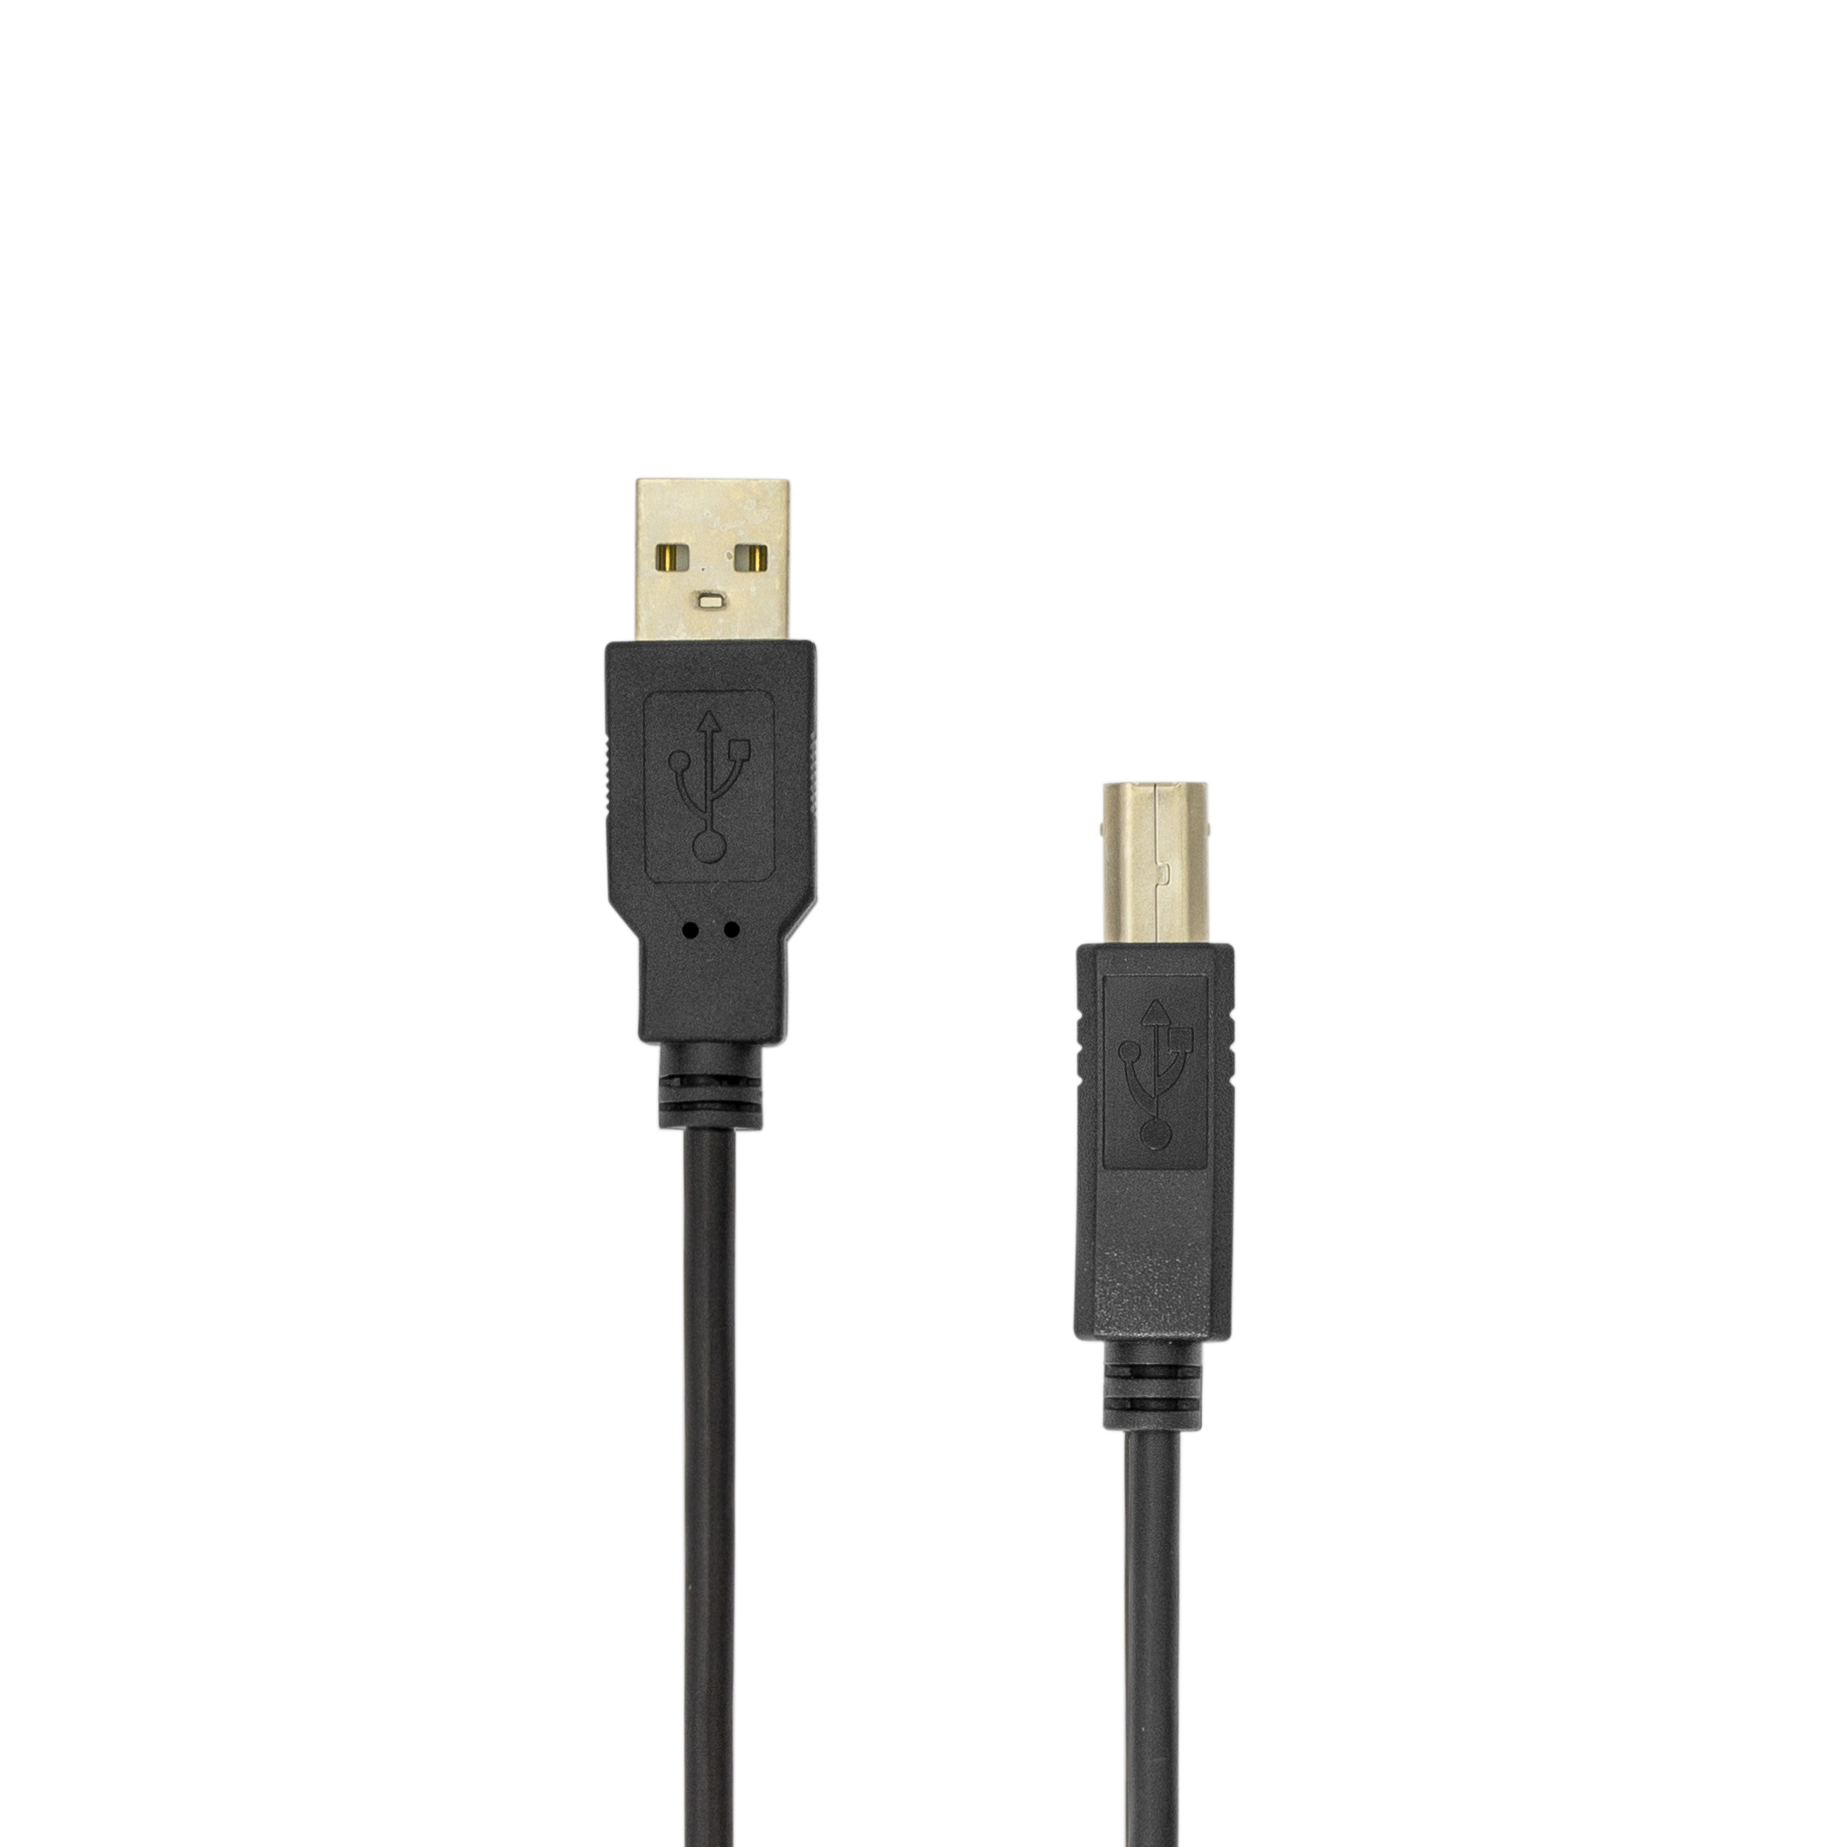 Cablu Date Sbox USB A-USB B, Viteza de Transfer 480Mbps, Lungime 5m, Negru 480Mbps imagine noua tecomm.ro